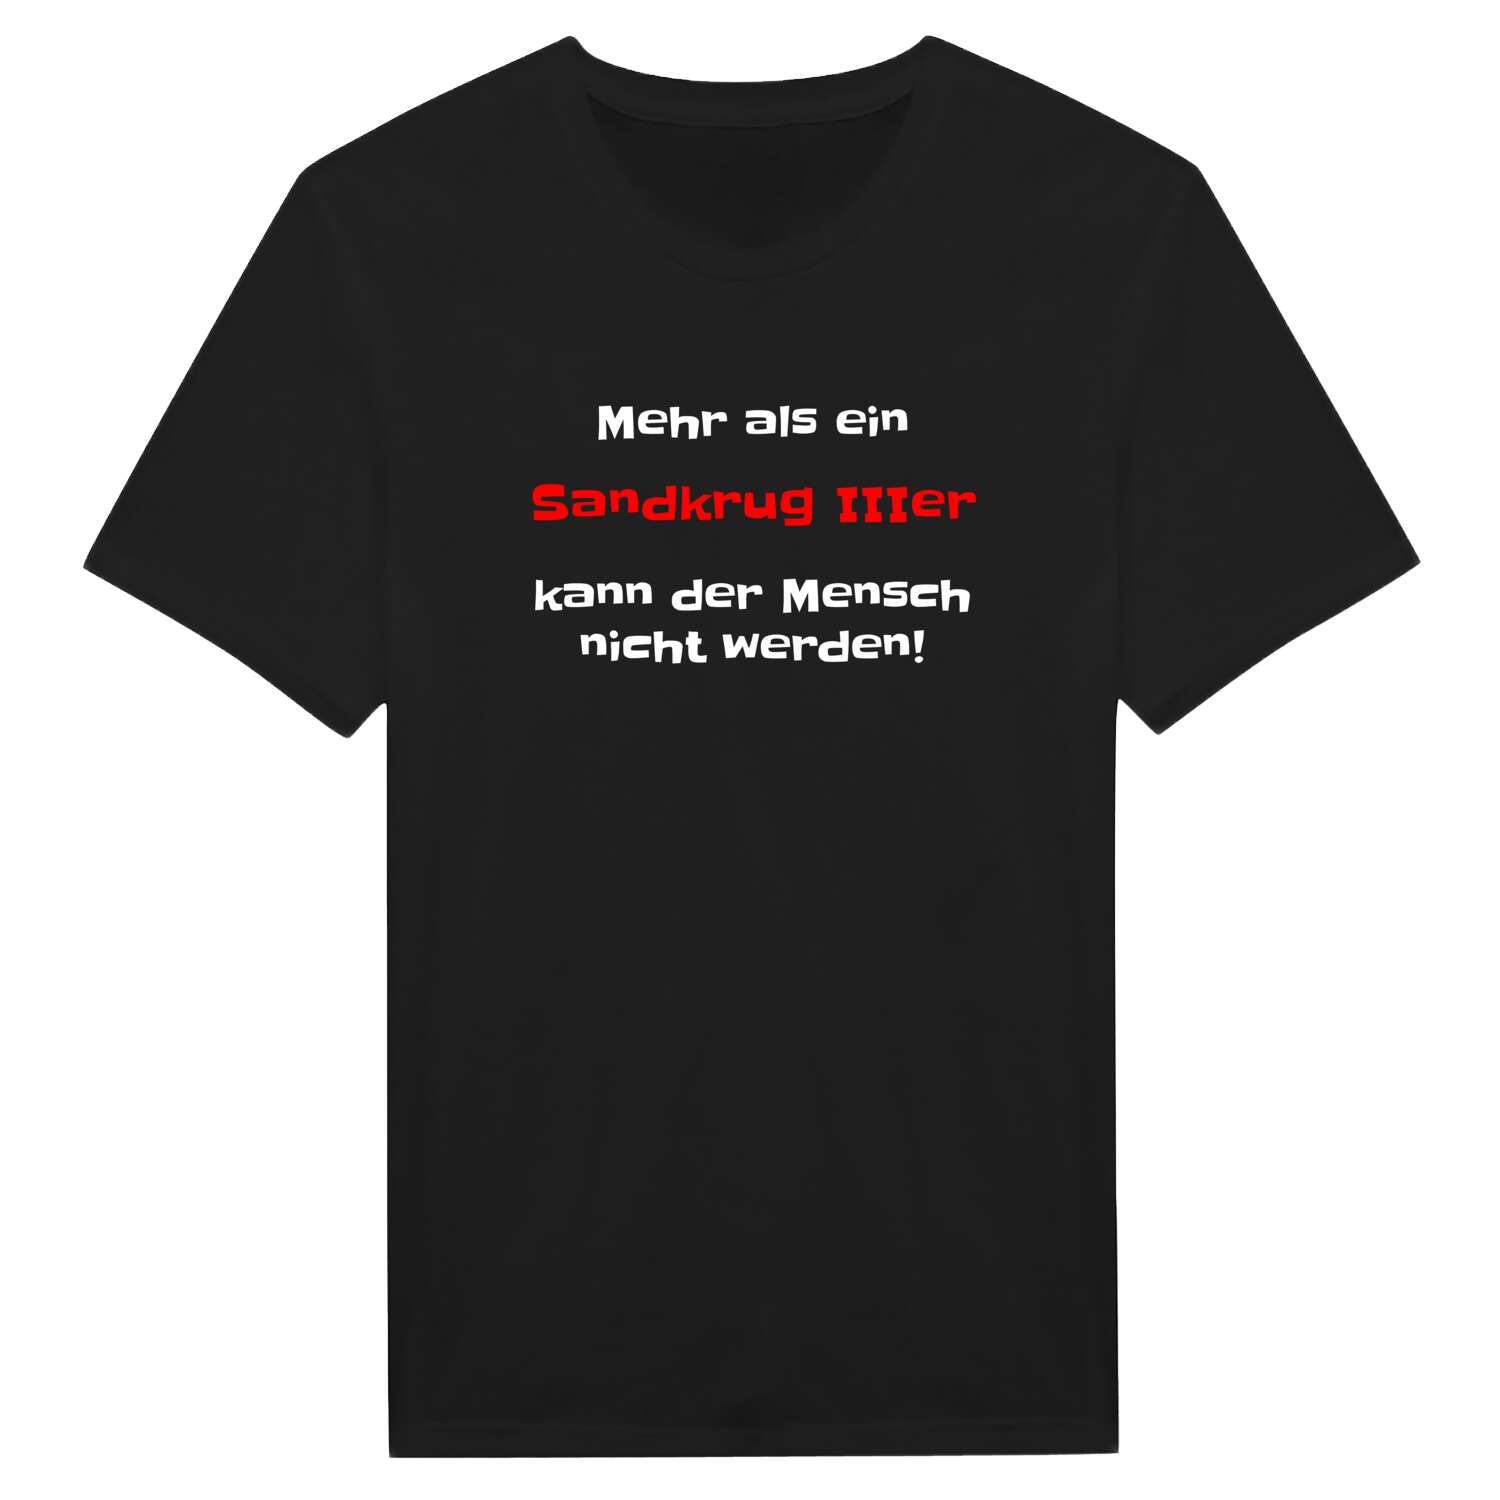 Sandkrug III T-Shirt »Mehr als ein«